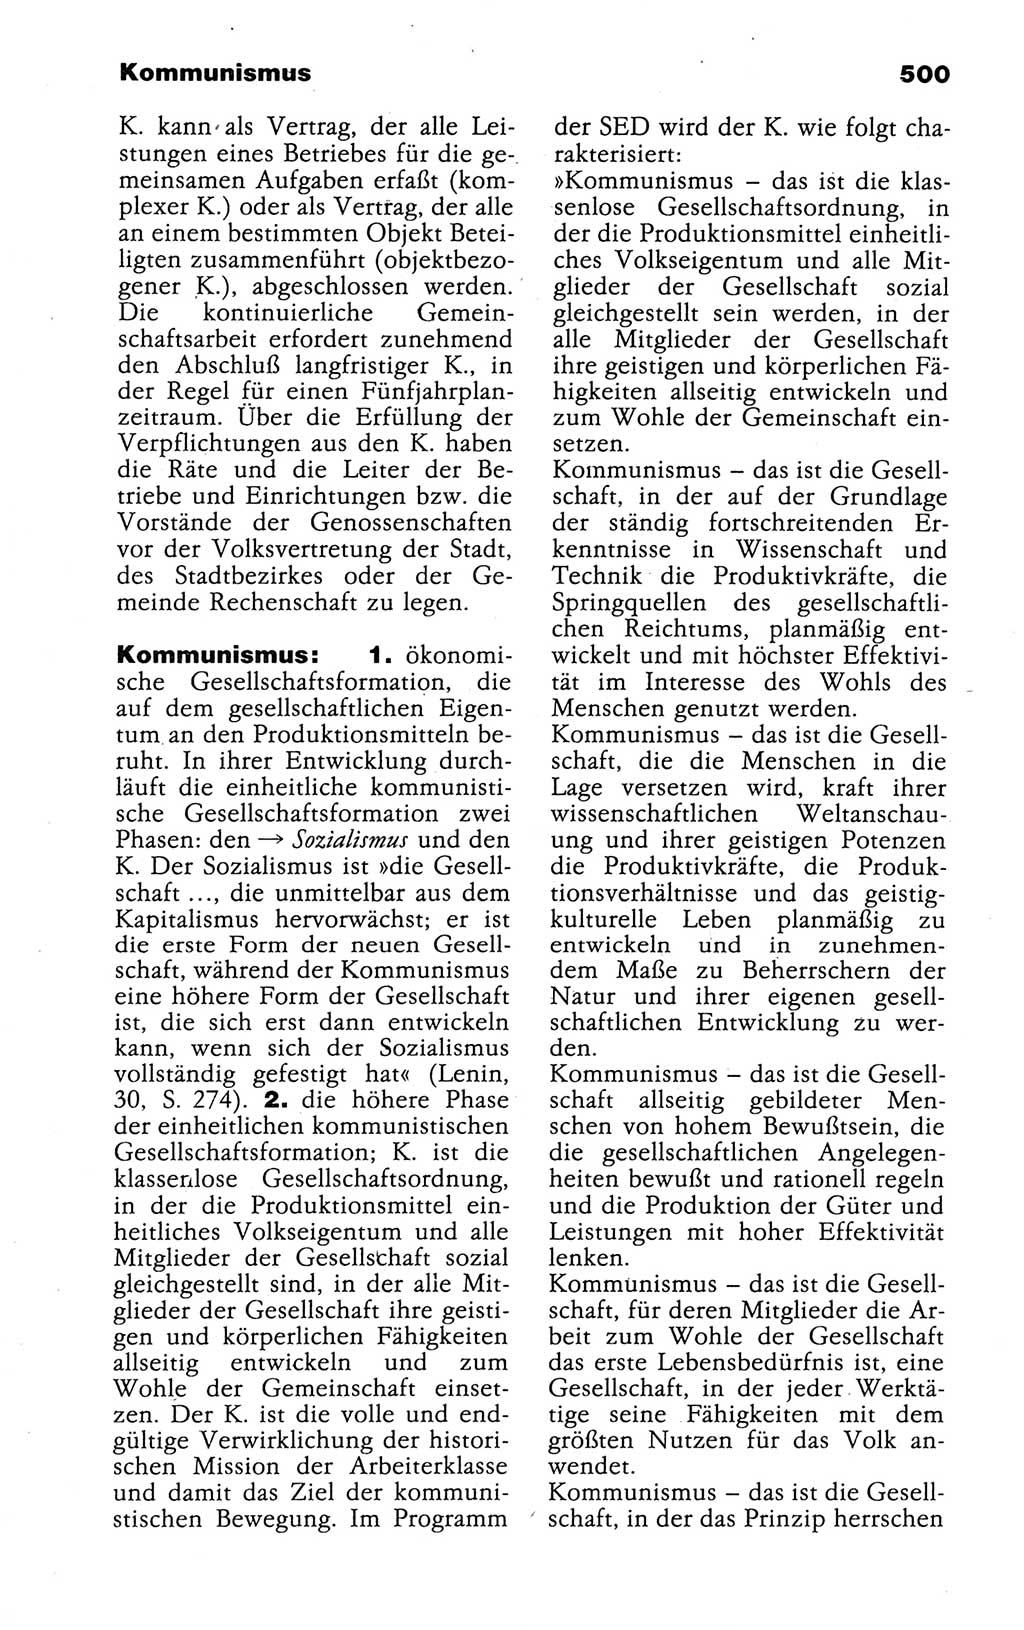 Kleines politisches Wörterbuch [Deutsche Demokratische Republik (DDR)] 1988, Seite 500 (Kl. pol. Wb. DDR 1988, S. 500)